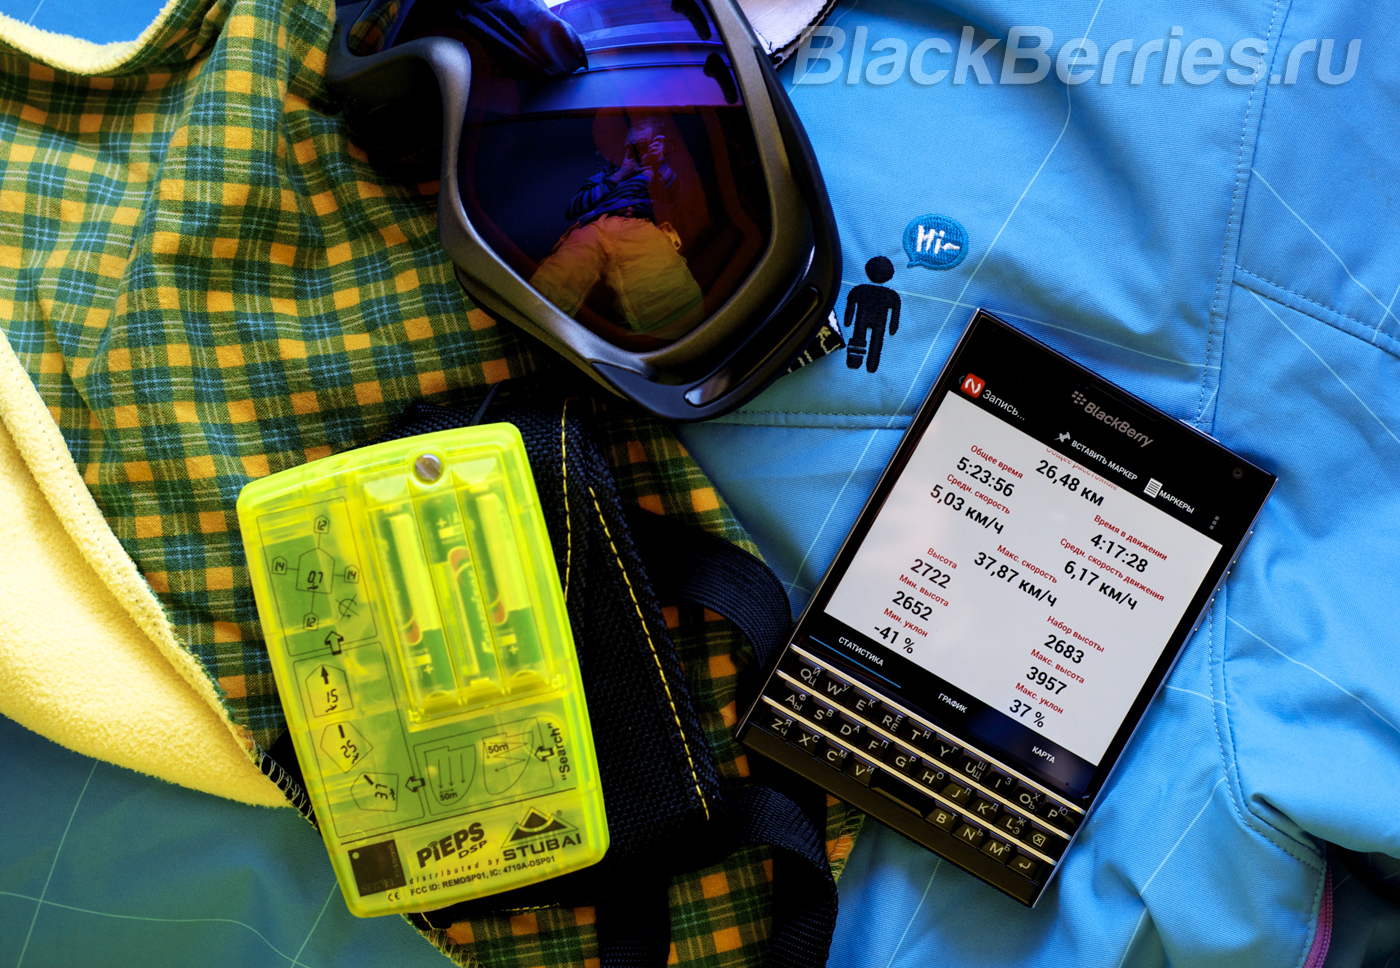 BlackBerry-Passport-NoGago-Tracks